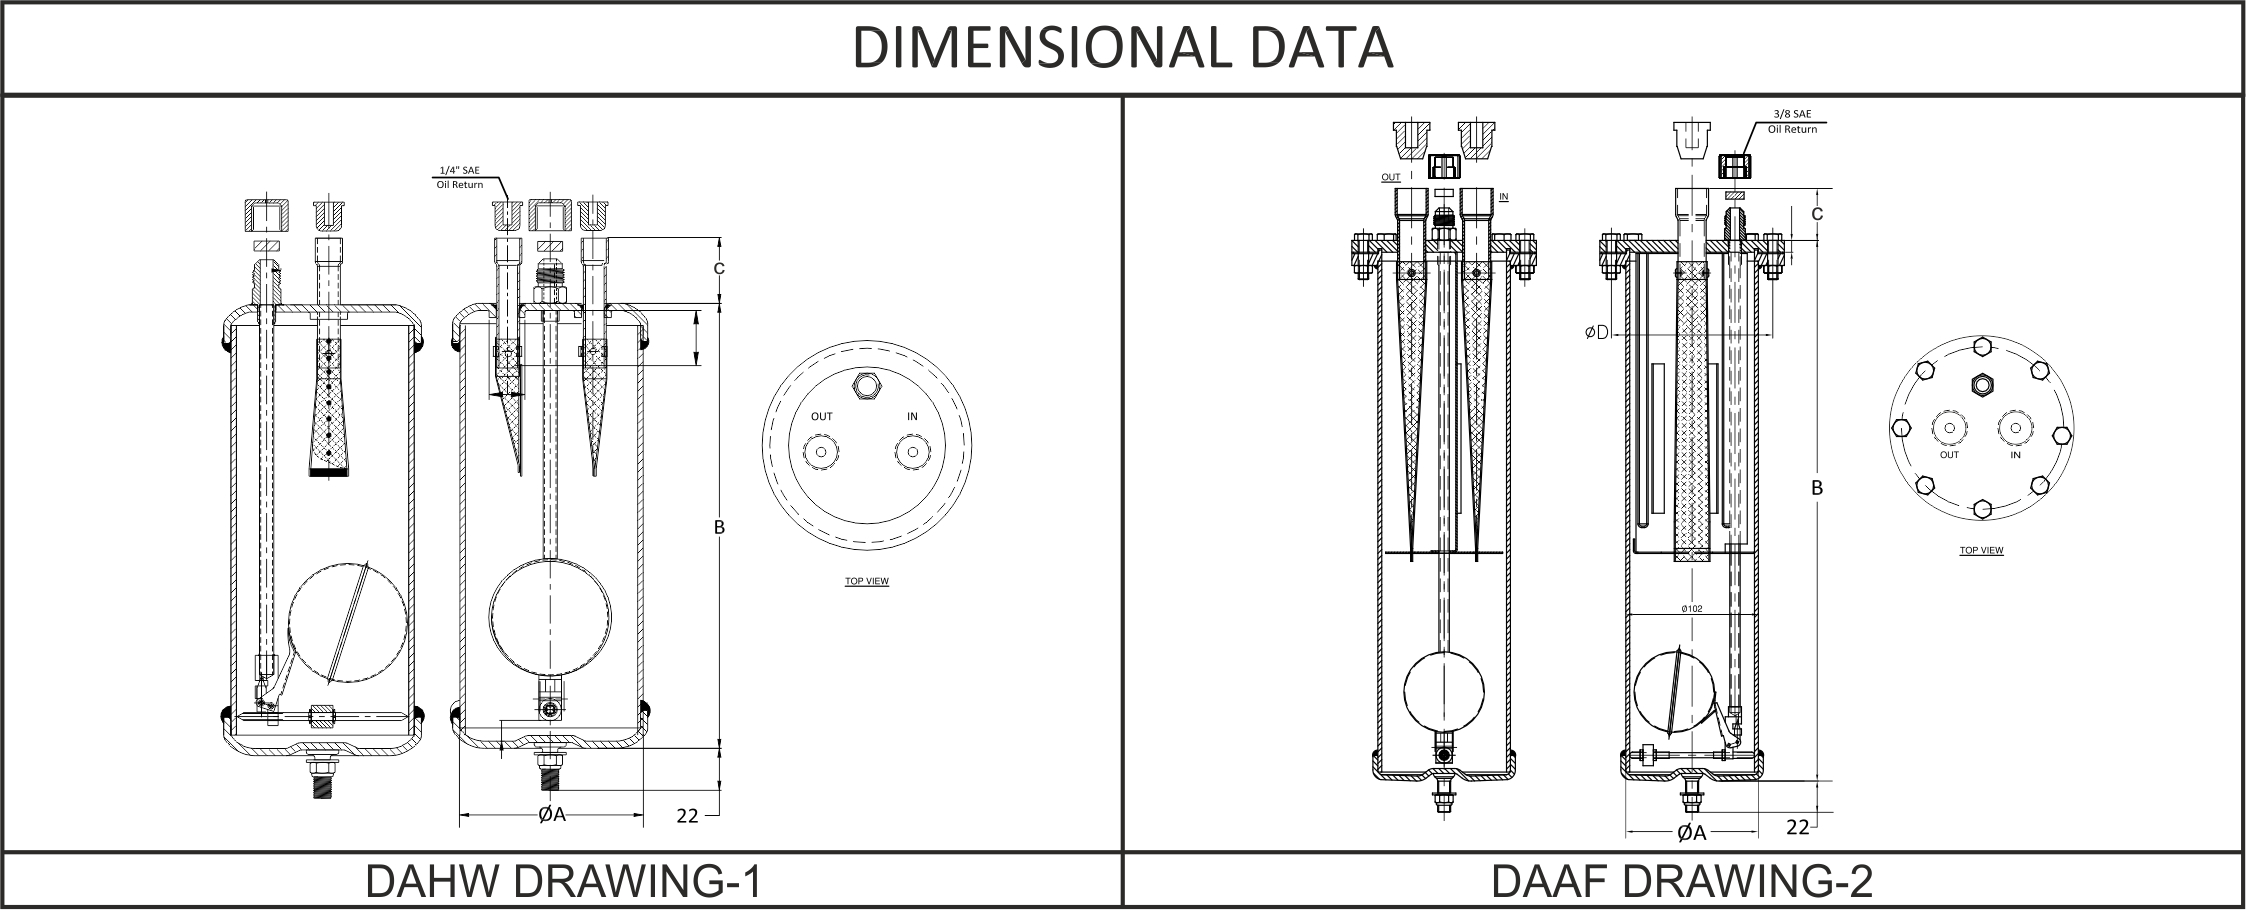 Dry All  Oil Separators (DAHW & DAAF)